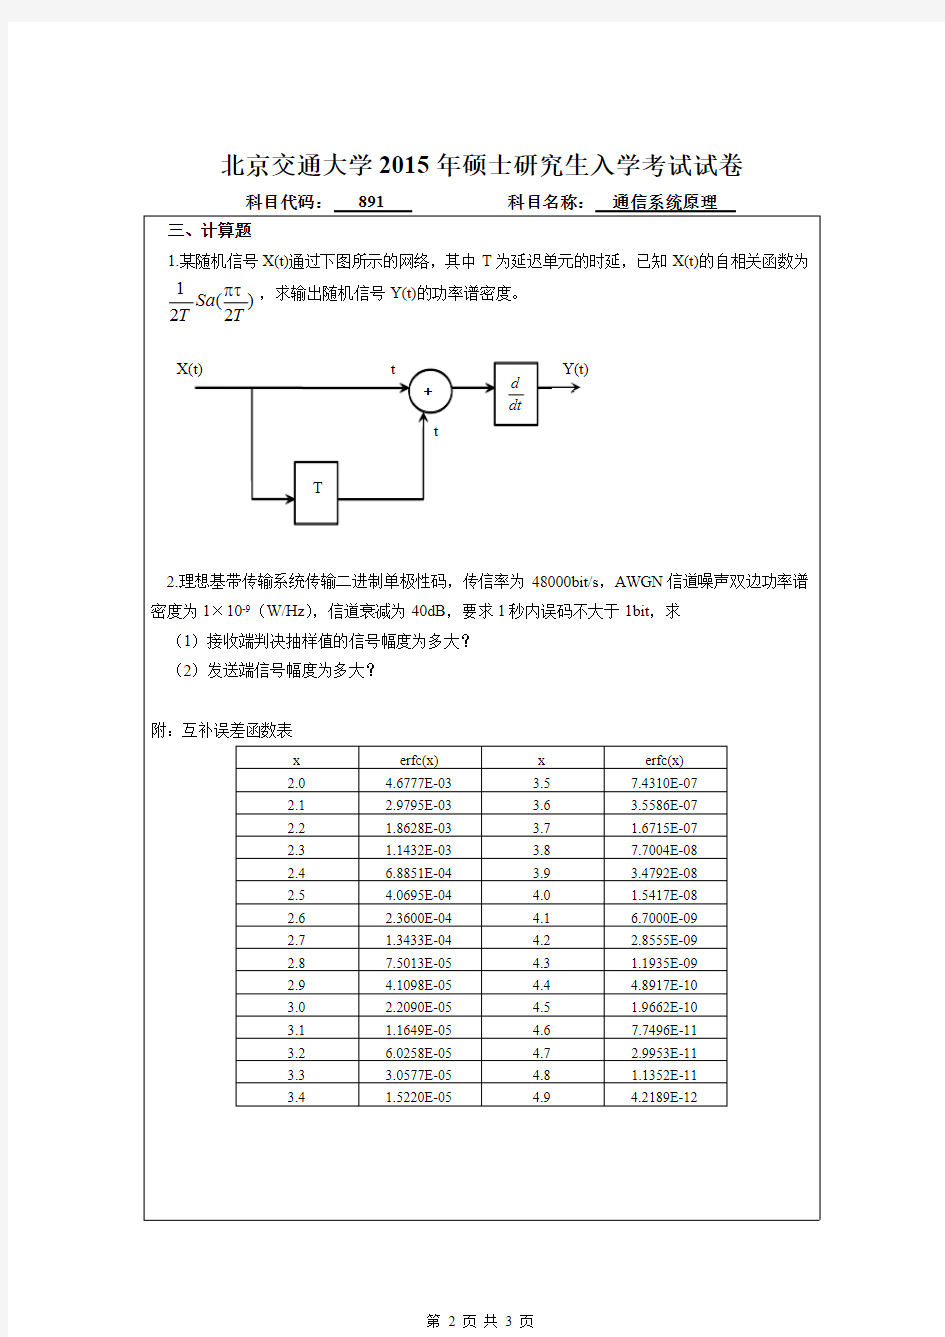 北京交通大学2015年《891通信系统原理》考研真题